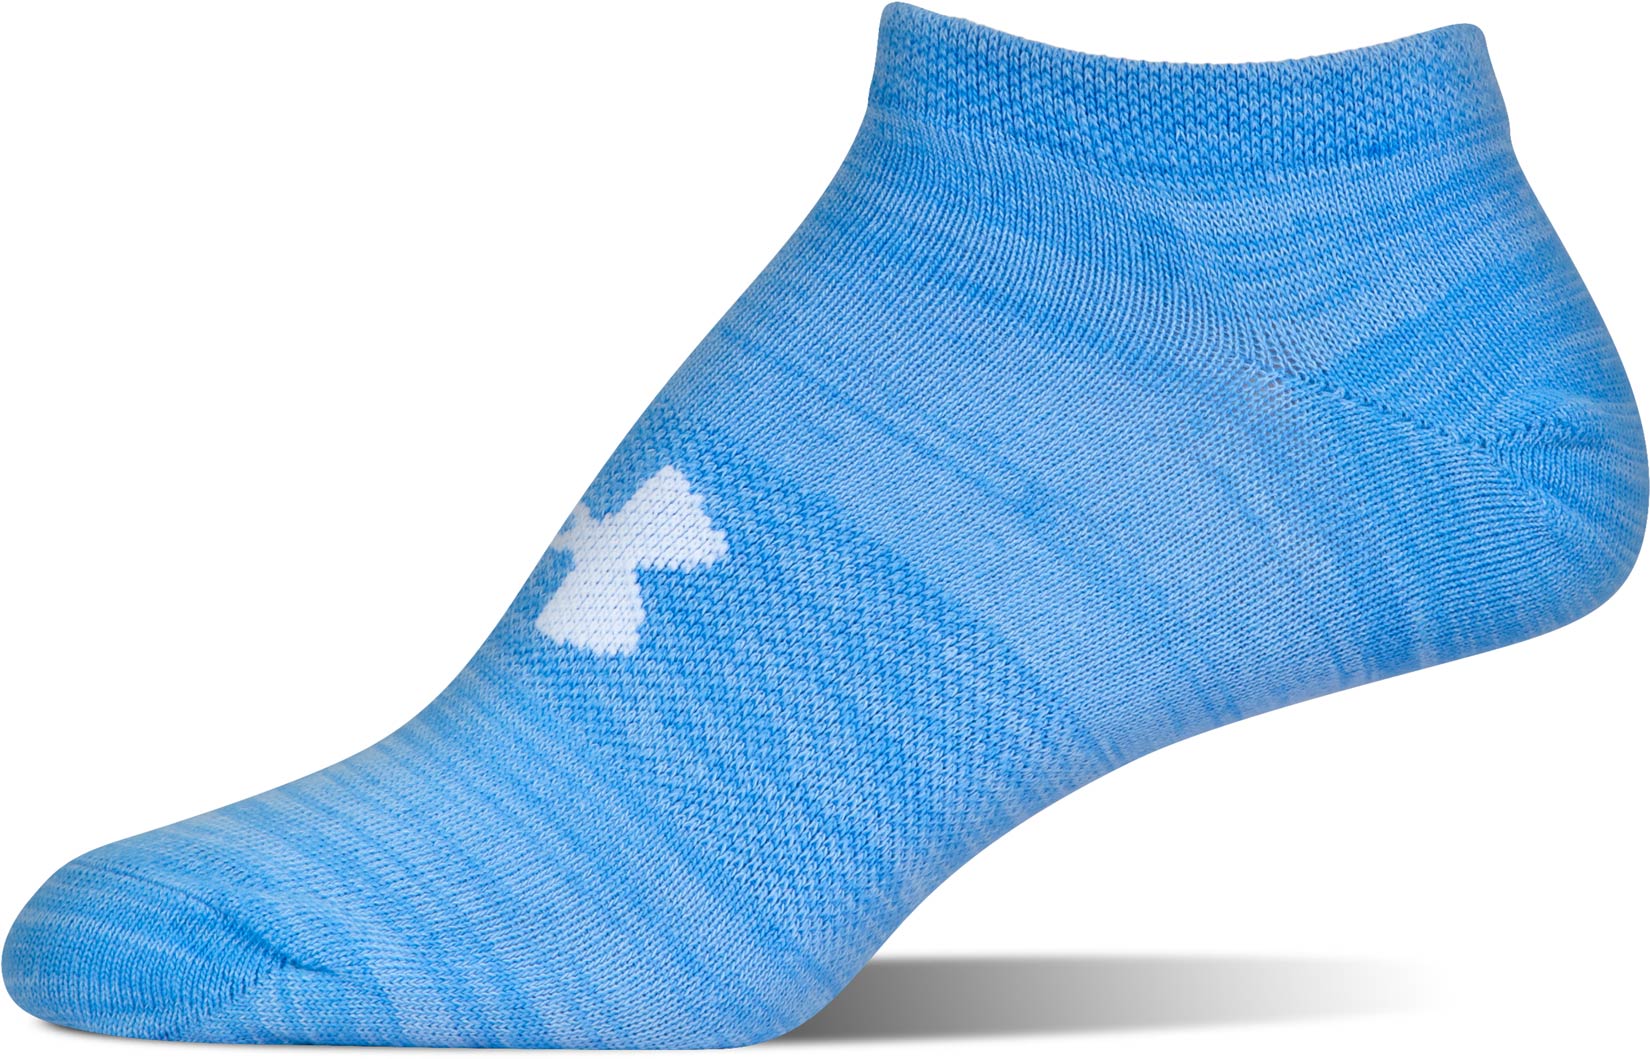 Women’s ankle socks